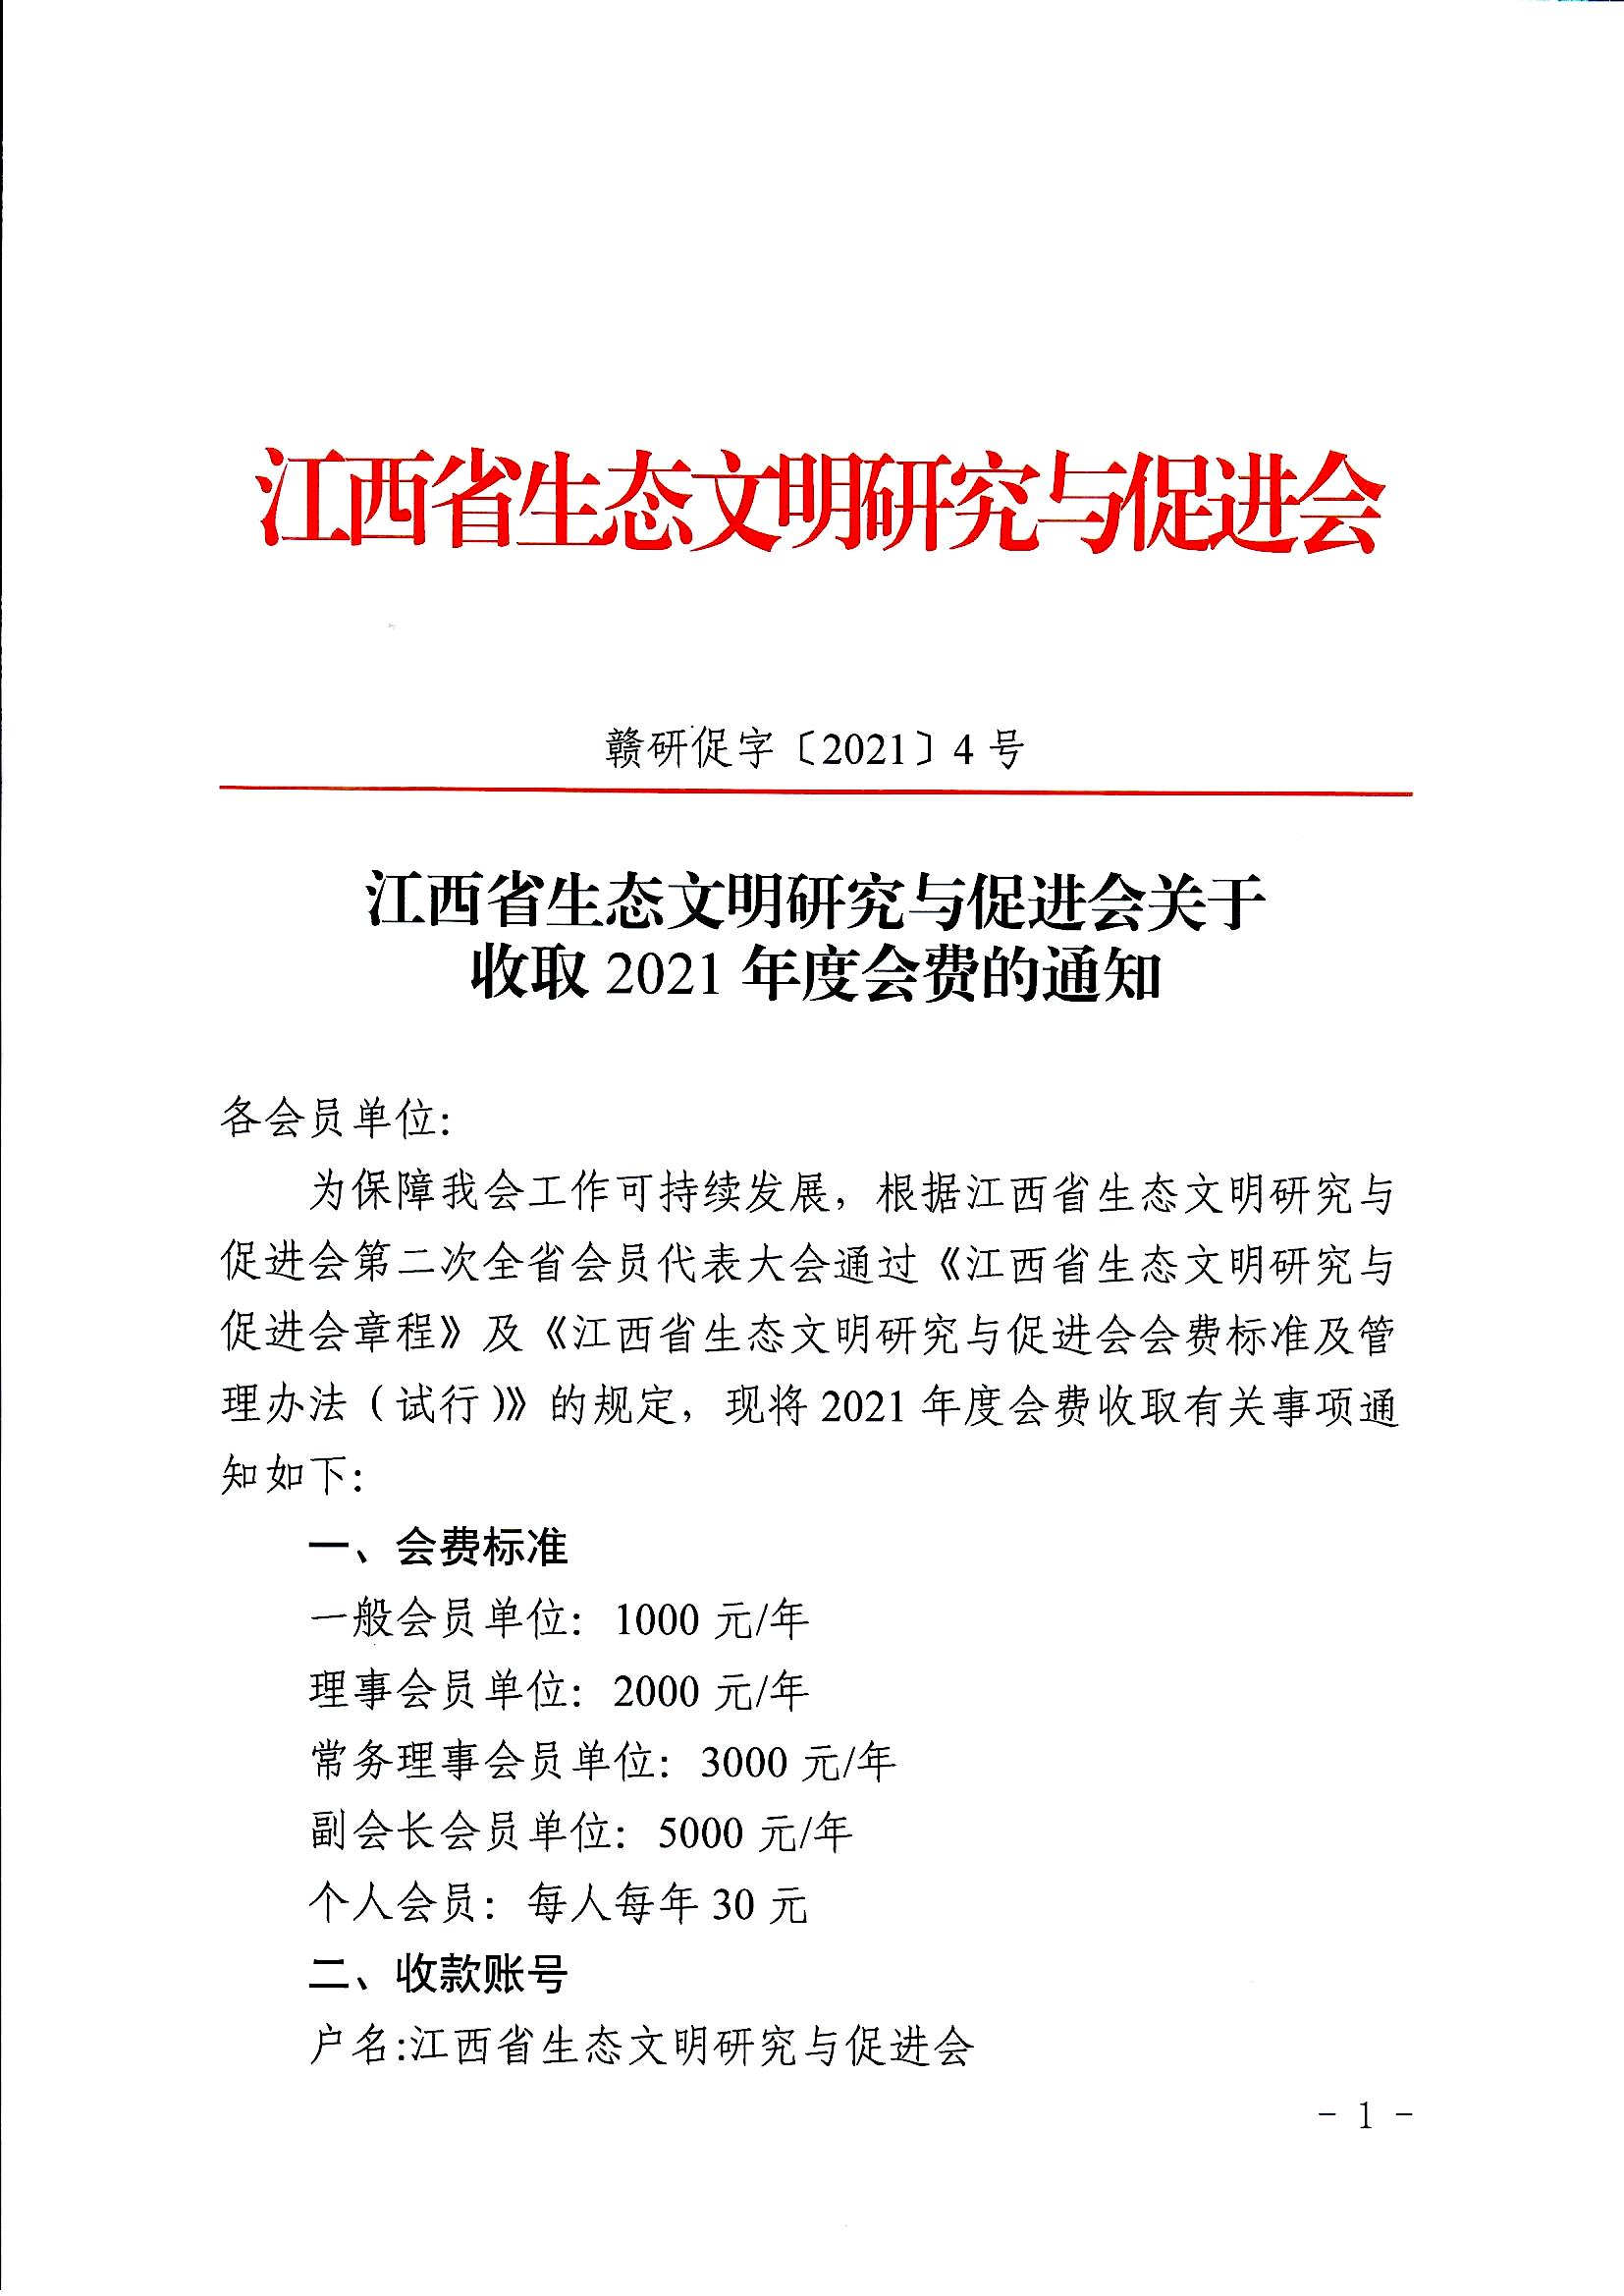 江西省生态文明研究与促进会关于收取2021年度会费的通知_页面_01.jpg